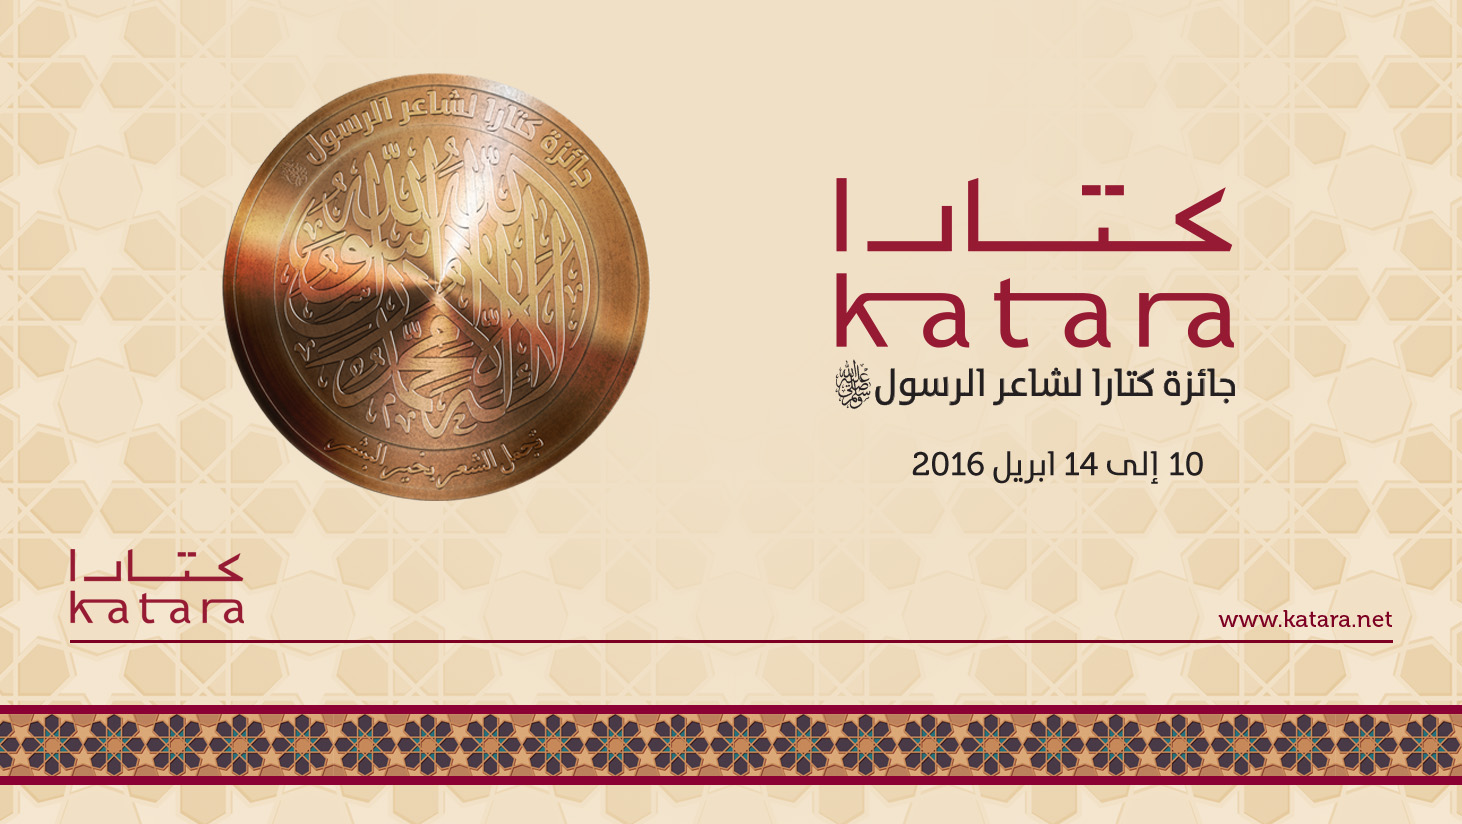 انطلاق مهرجان كتارا لشاعر الرسول بفعاليات متنوعة